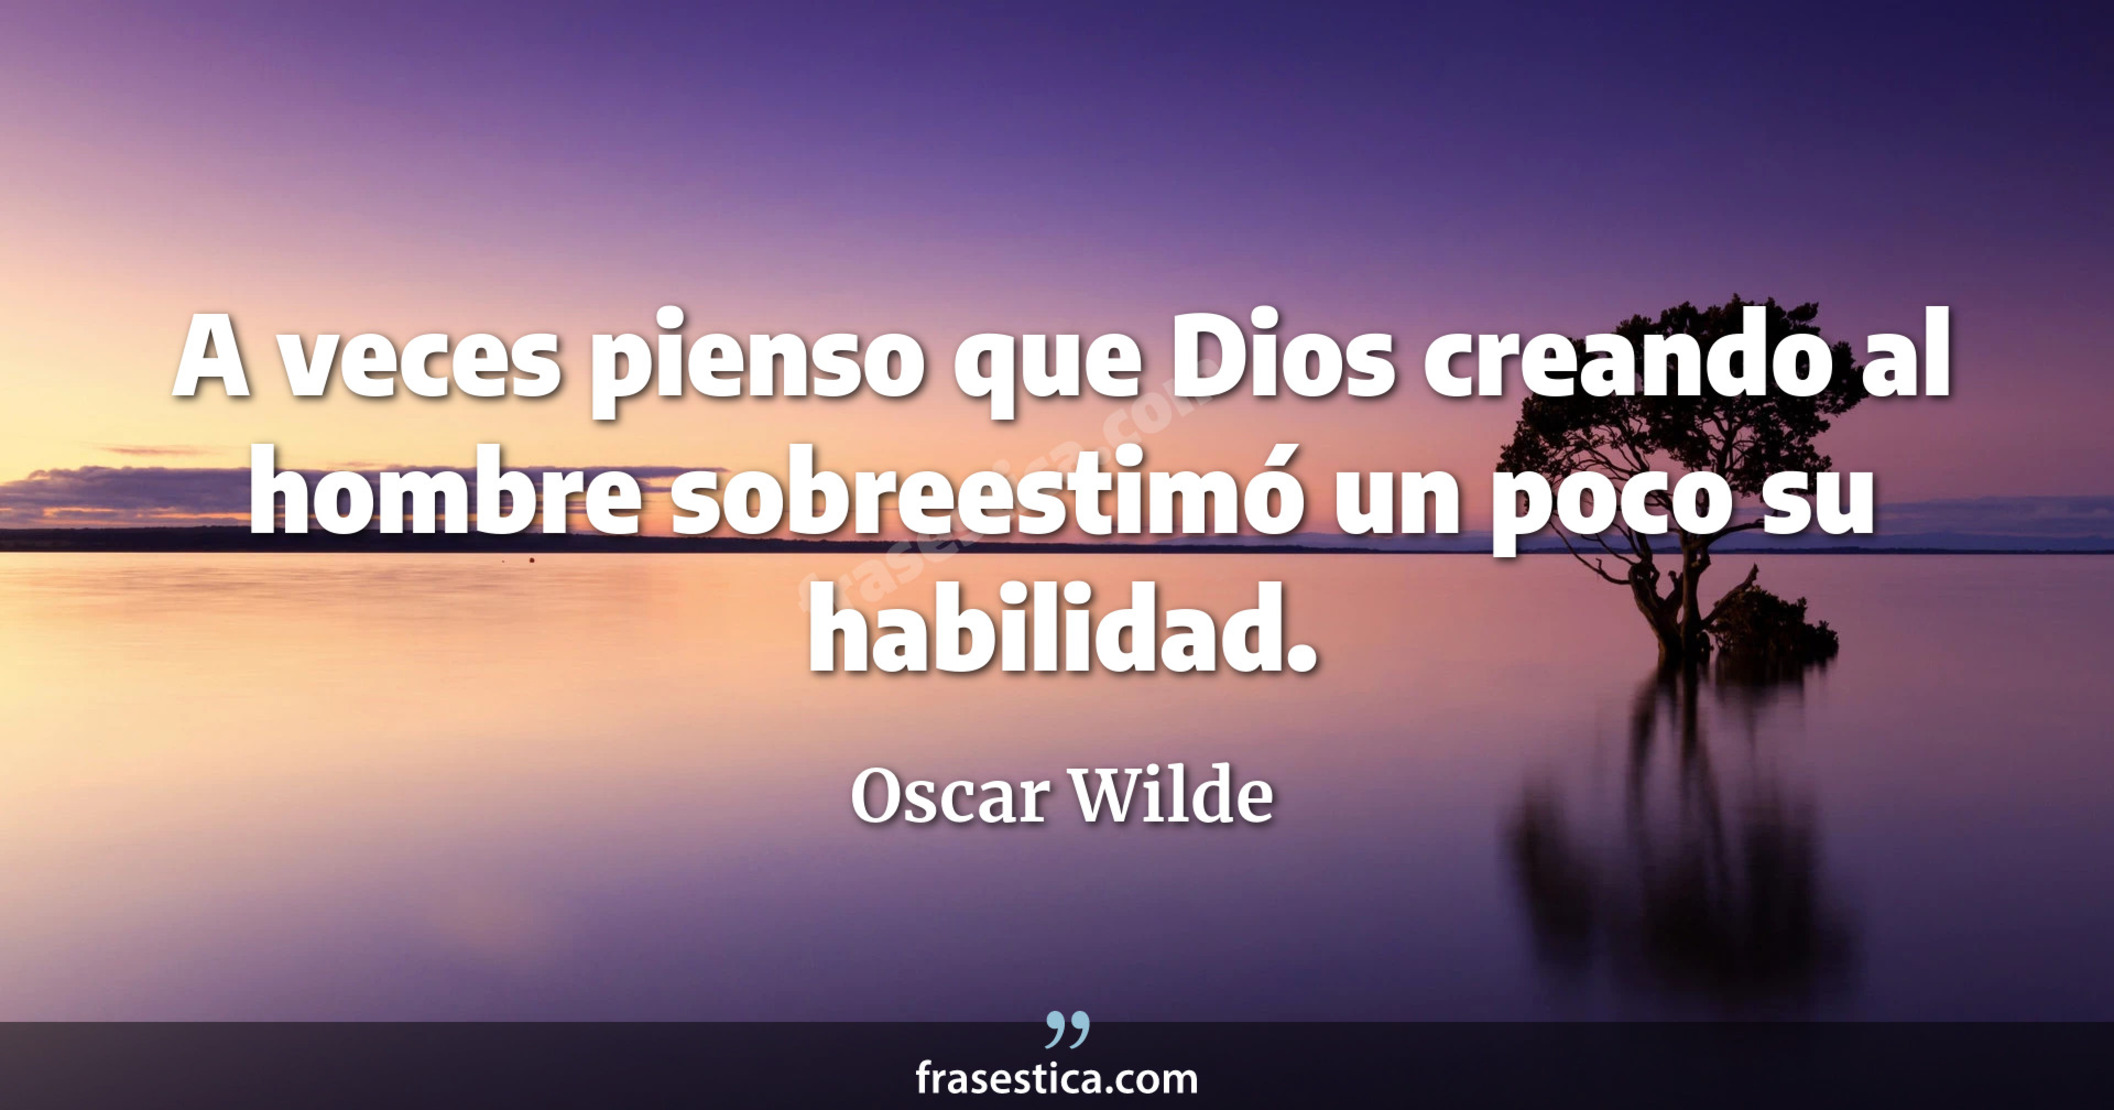 A veces pienso que Dios creando al hombre sobreestimó un poco su habilidad. - Oscar Wilde